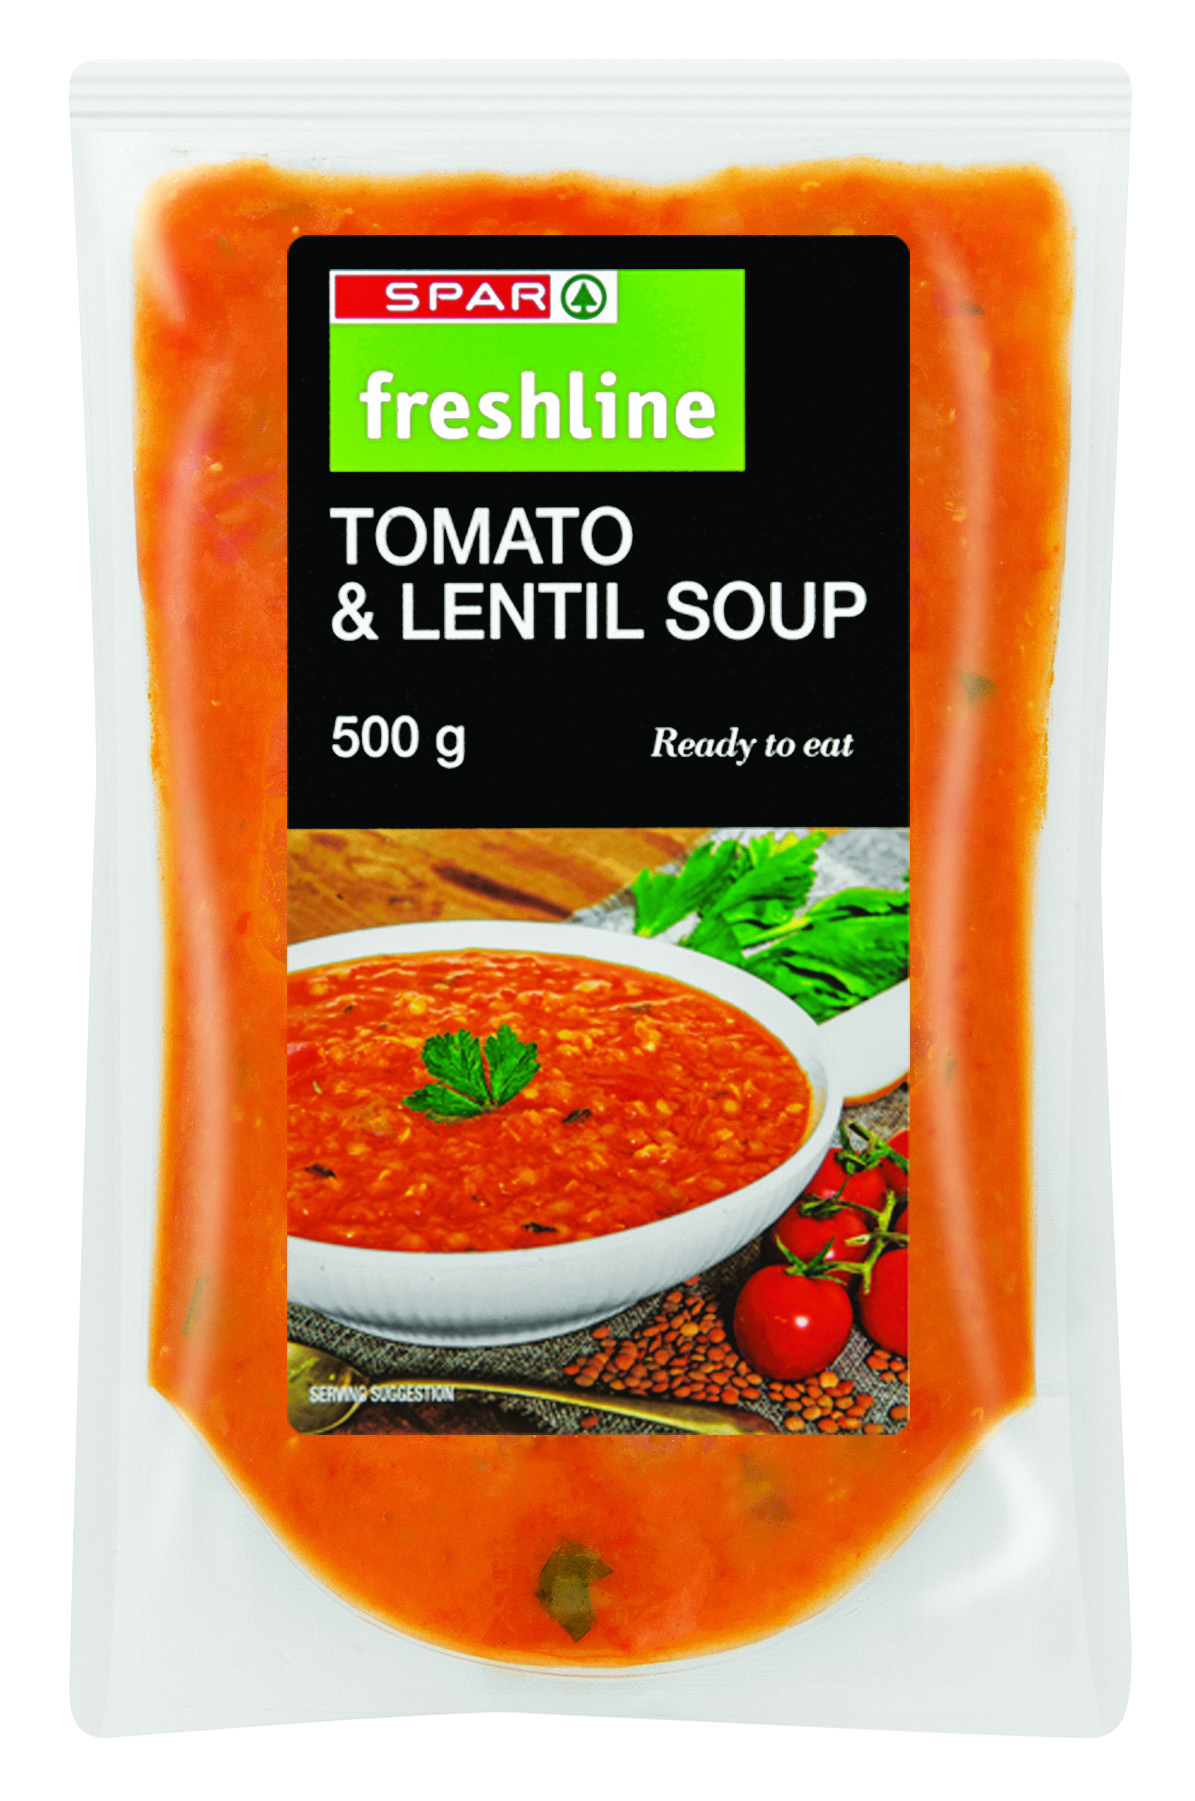 freshline tomato & lentil soup